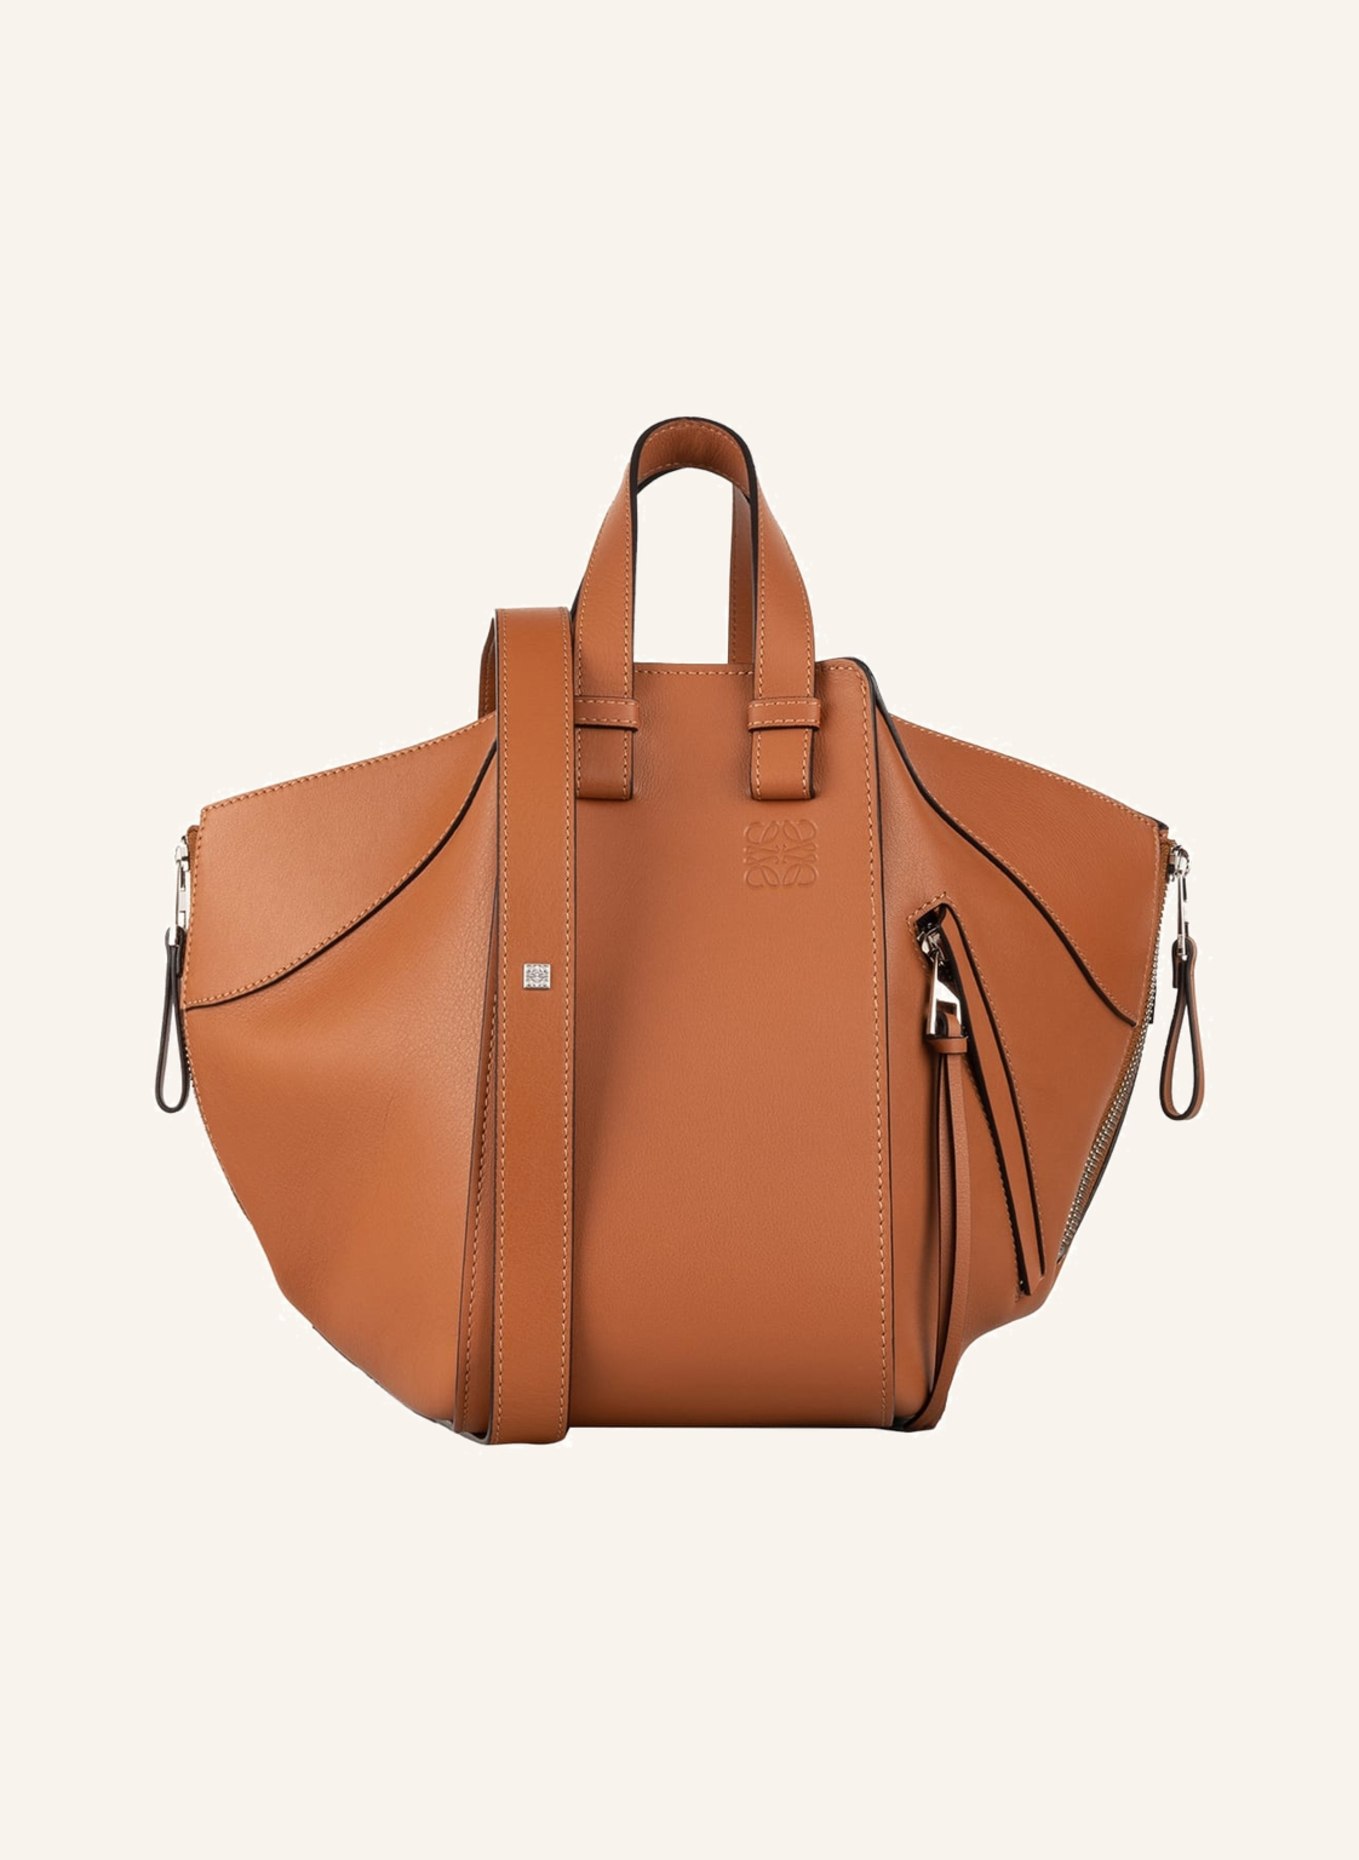 LOEWE Handtasche HAMMOCK SMALL, Farbe: COGNAC (Bild 1)